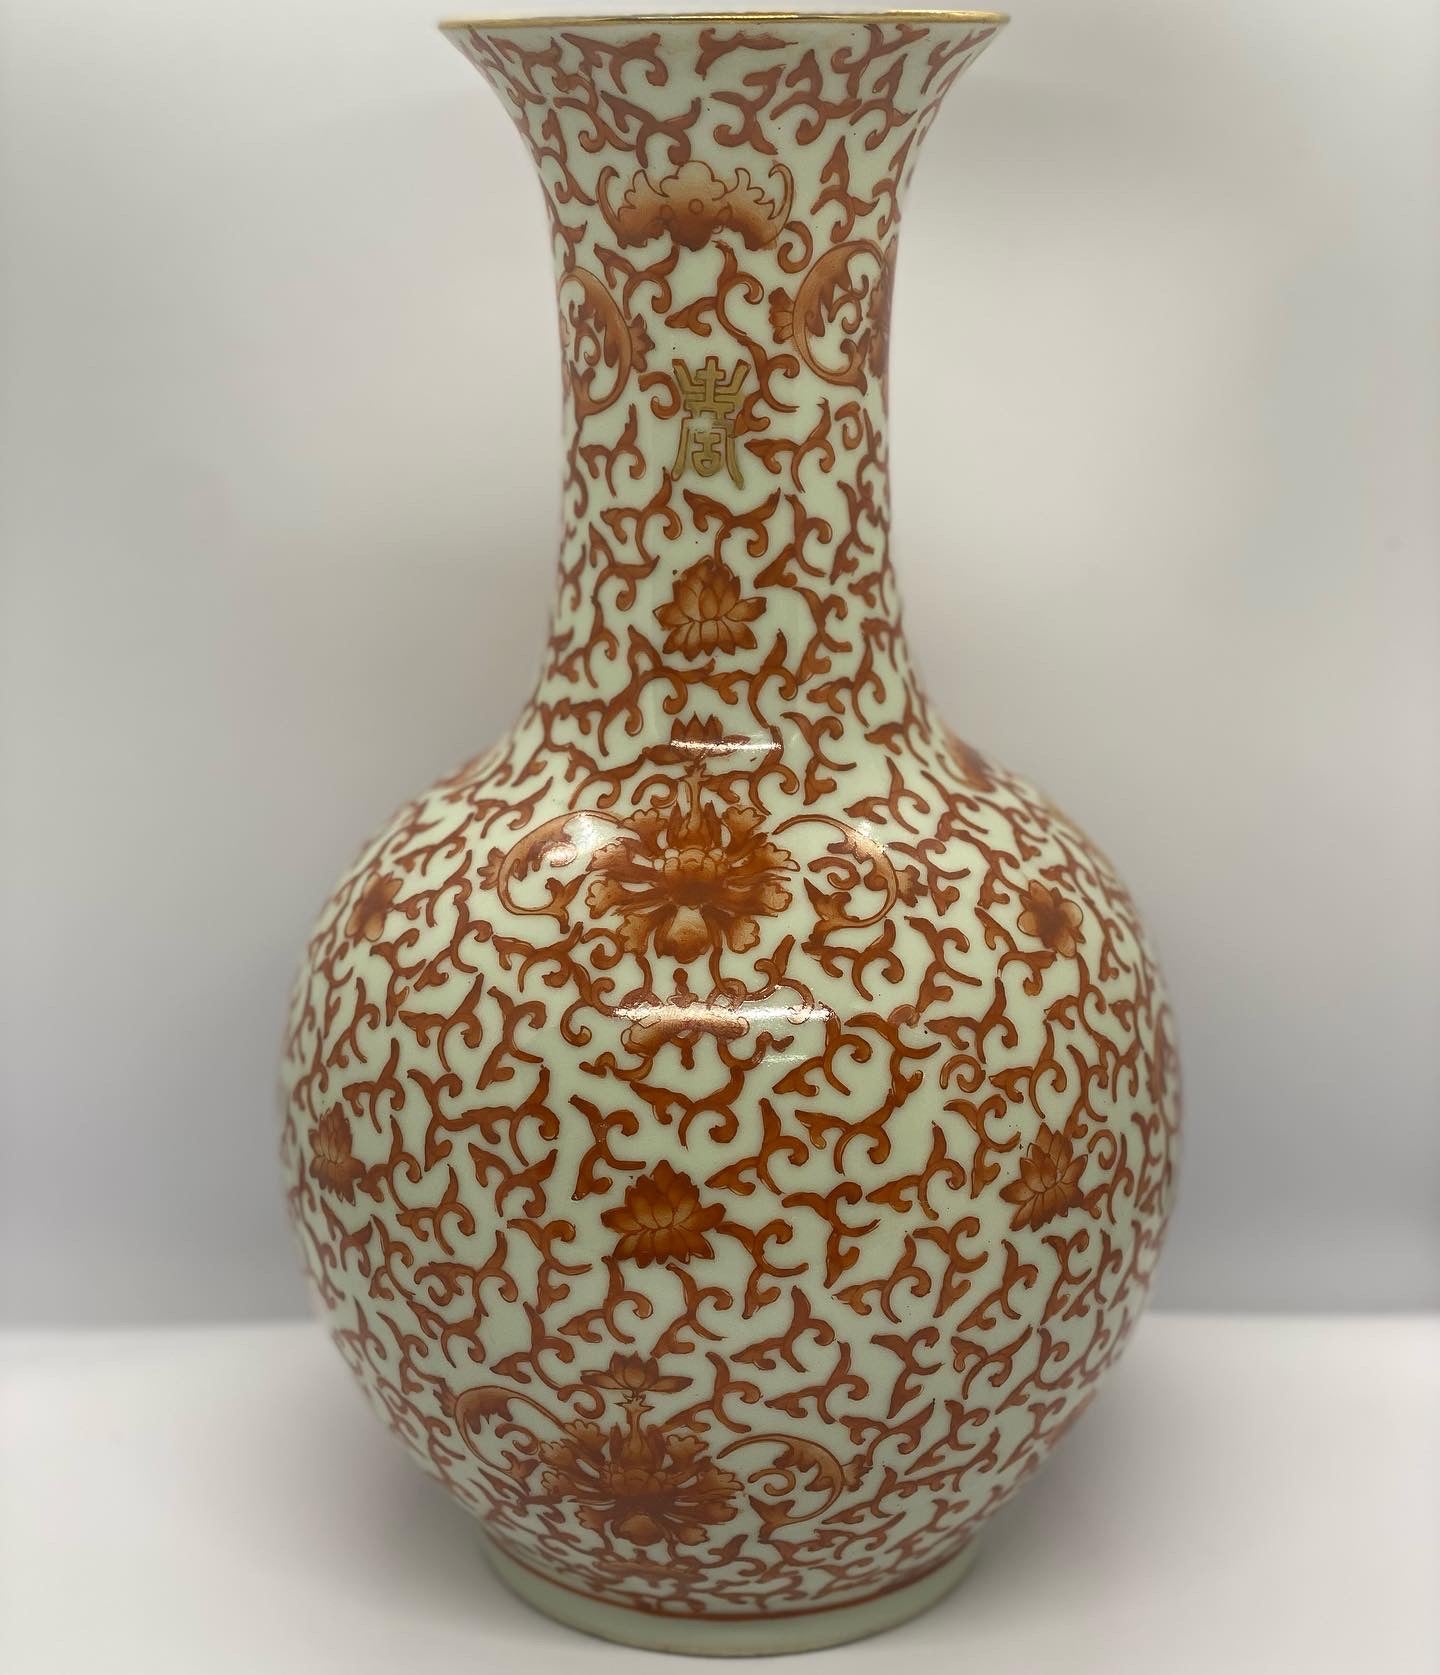 十九世纪末清朝铜红釉花瓶，手绘吉祥图案。